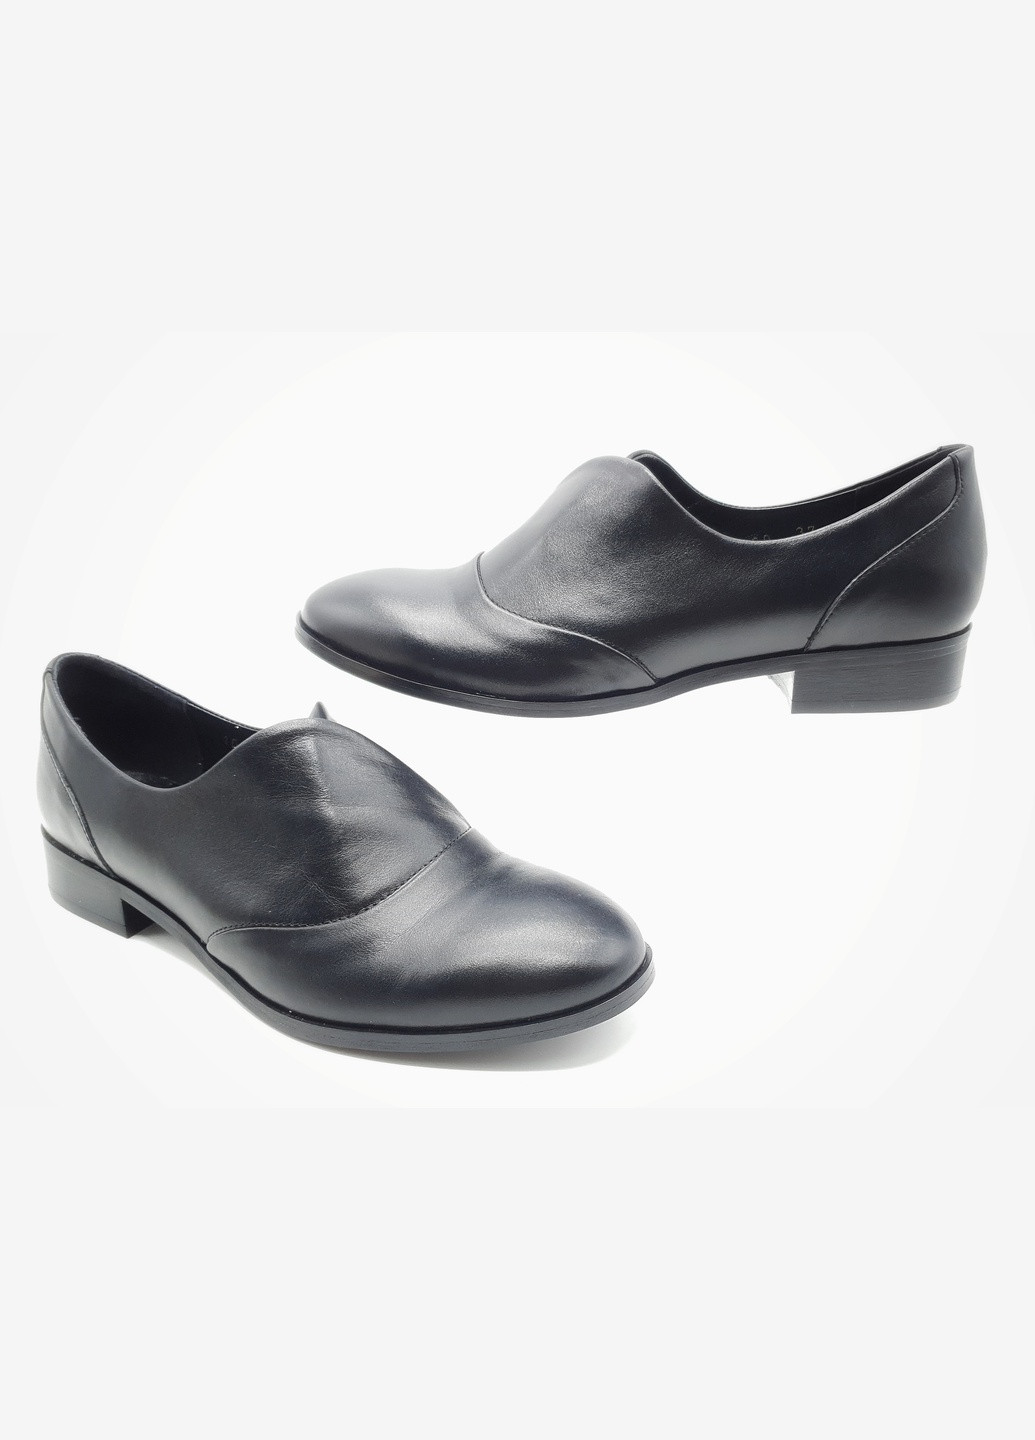 Жіночі туфлі чорні шкіряні P-17-10 24 см (р) patterns (259299752)